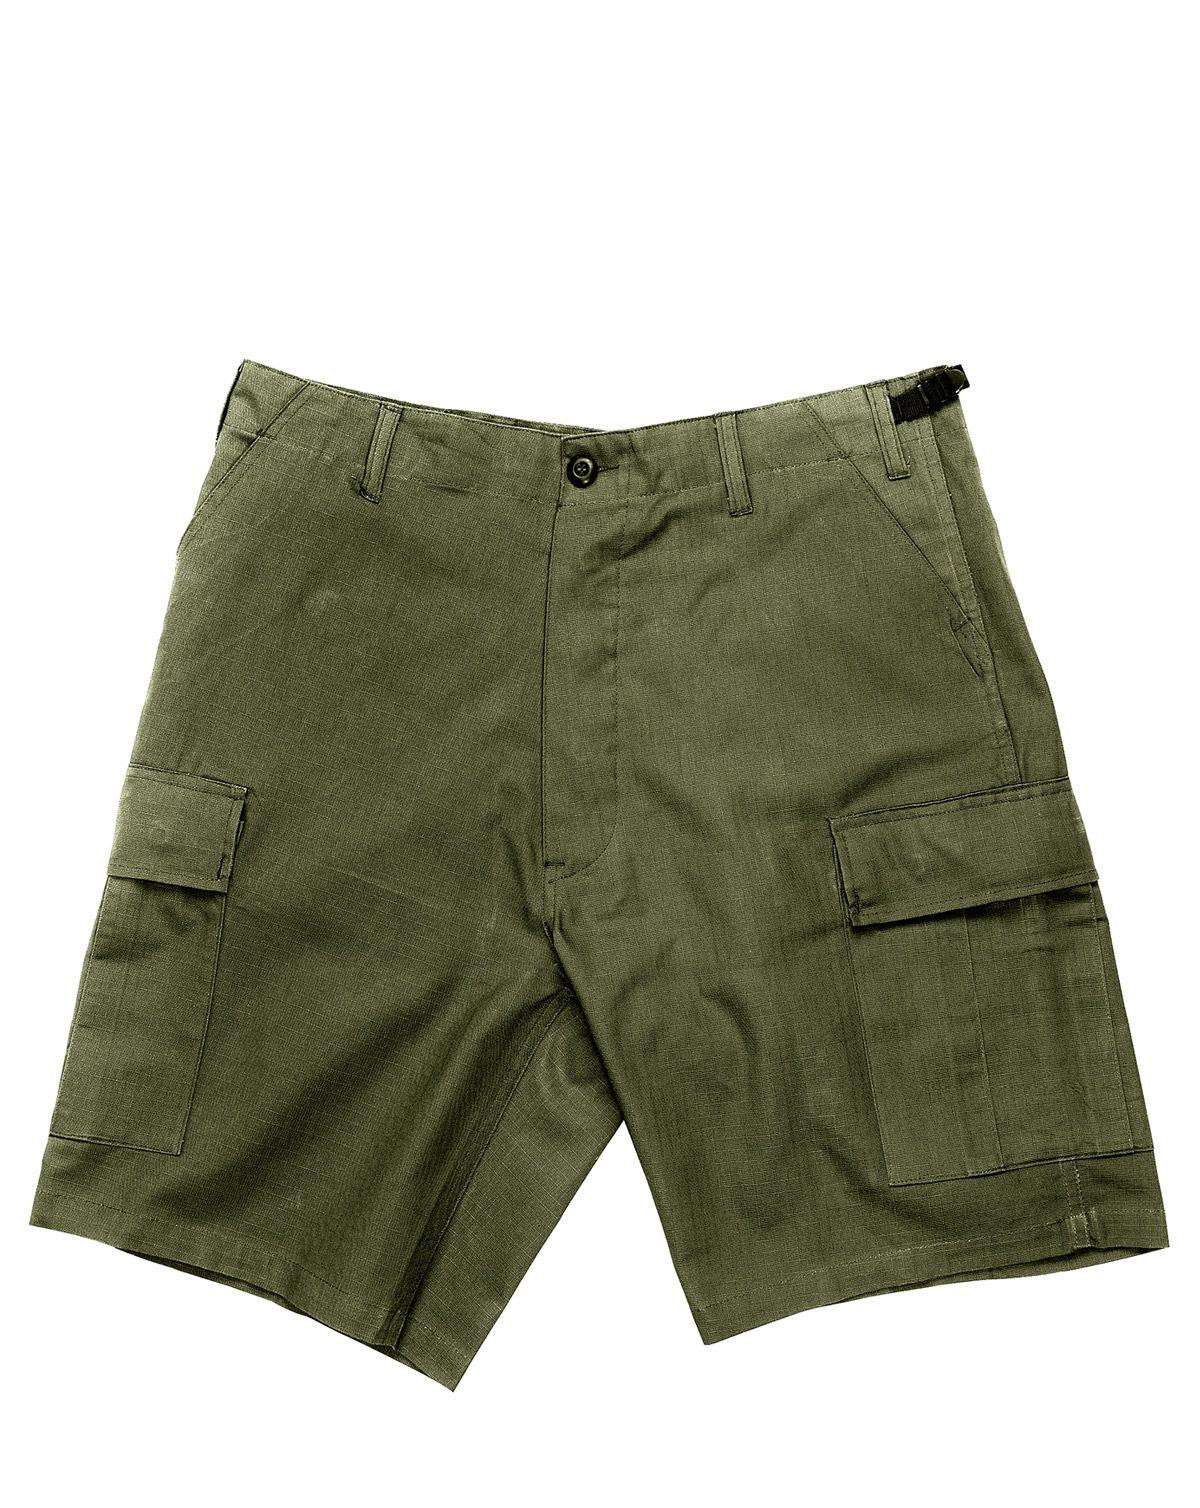 Rothco BDU Shorts i Rip-Stop (Oliven, Large / 35"-43")